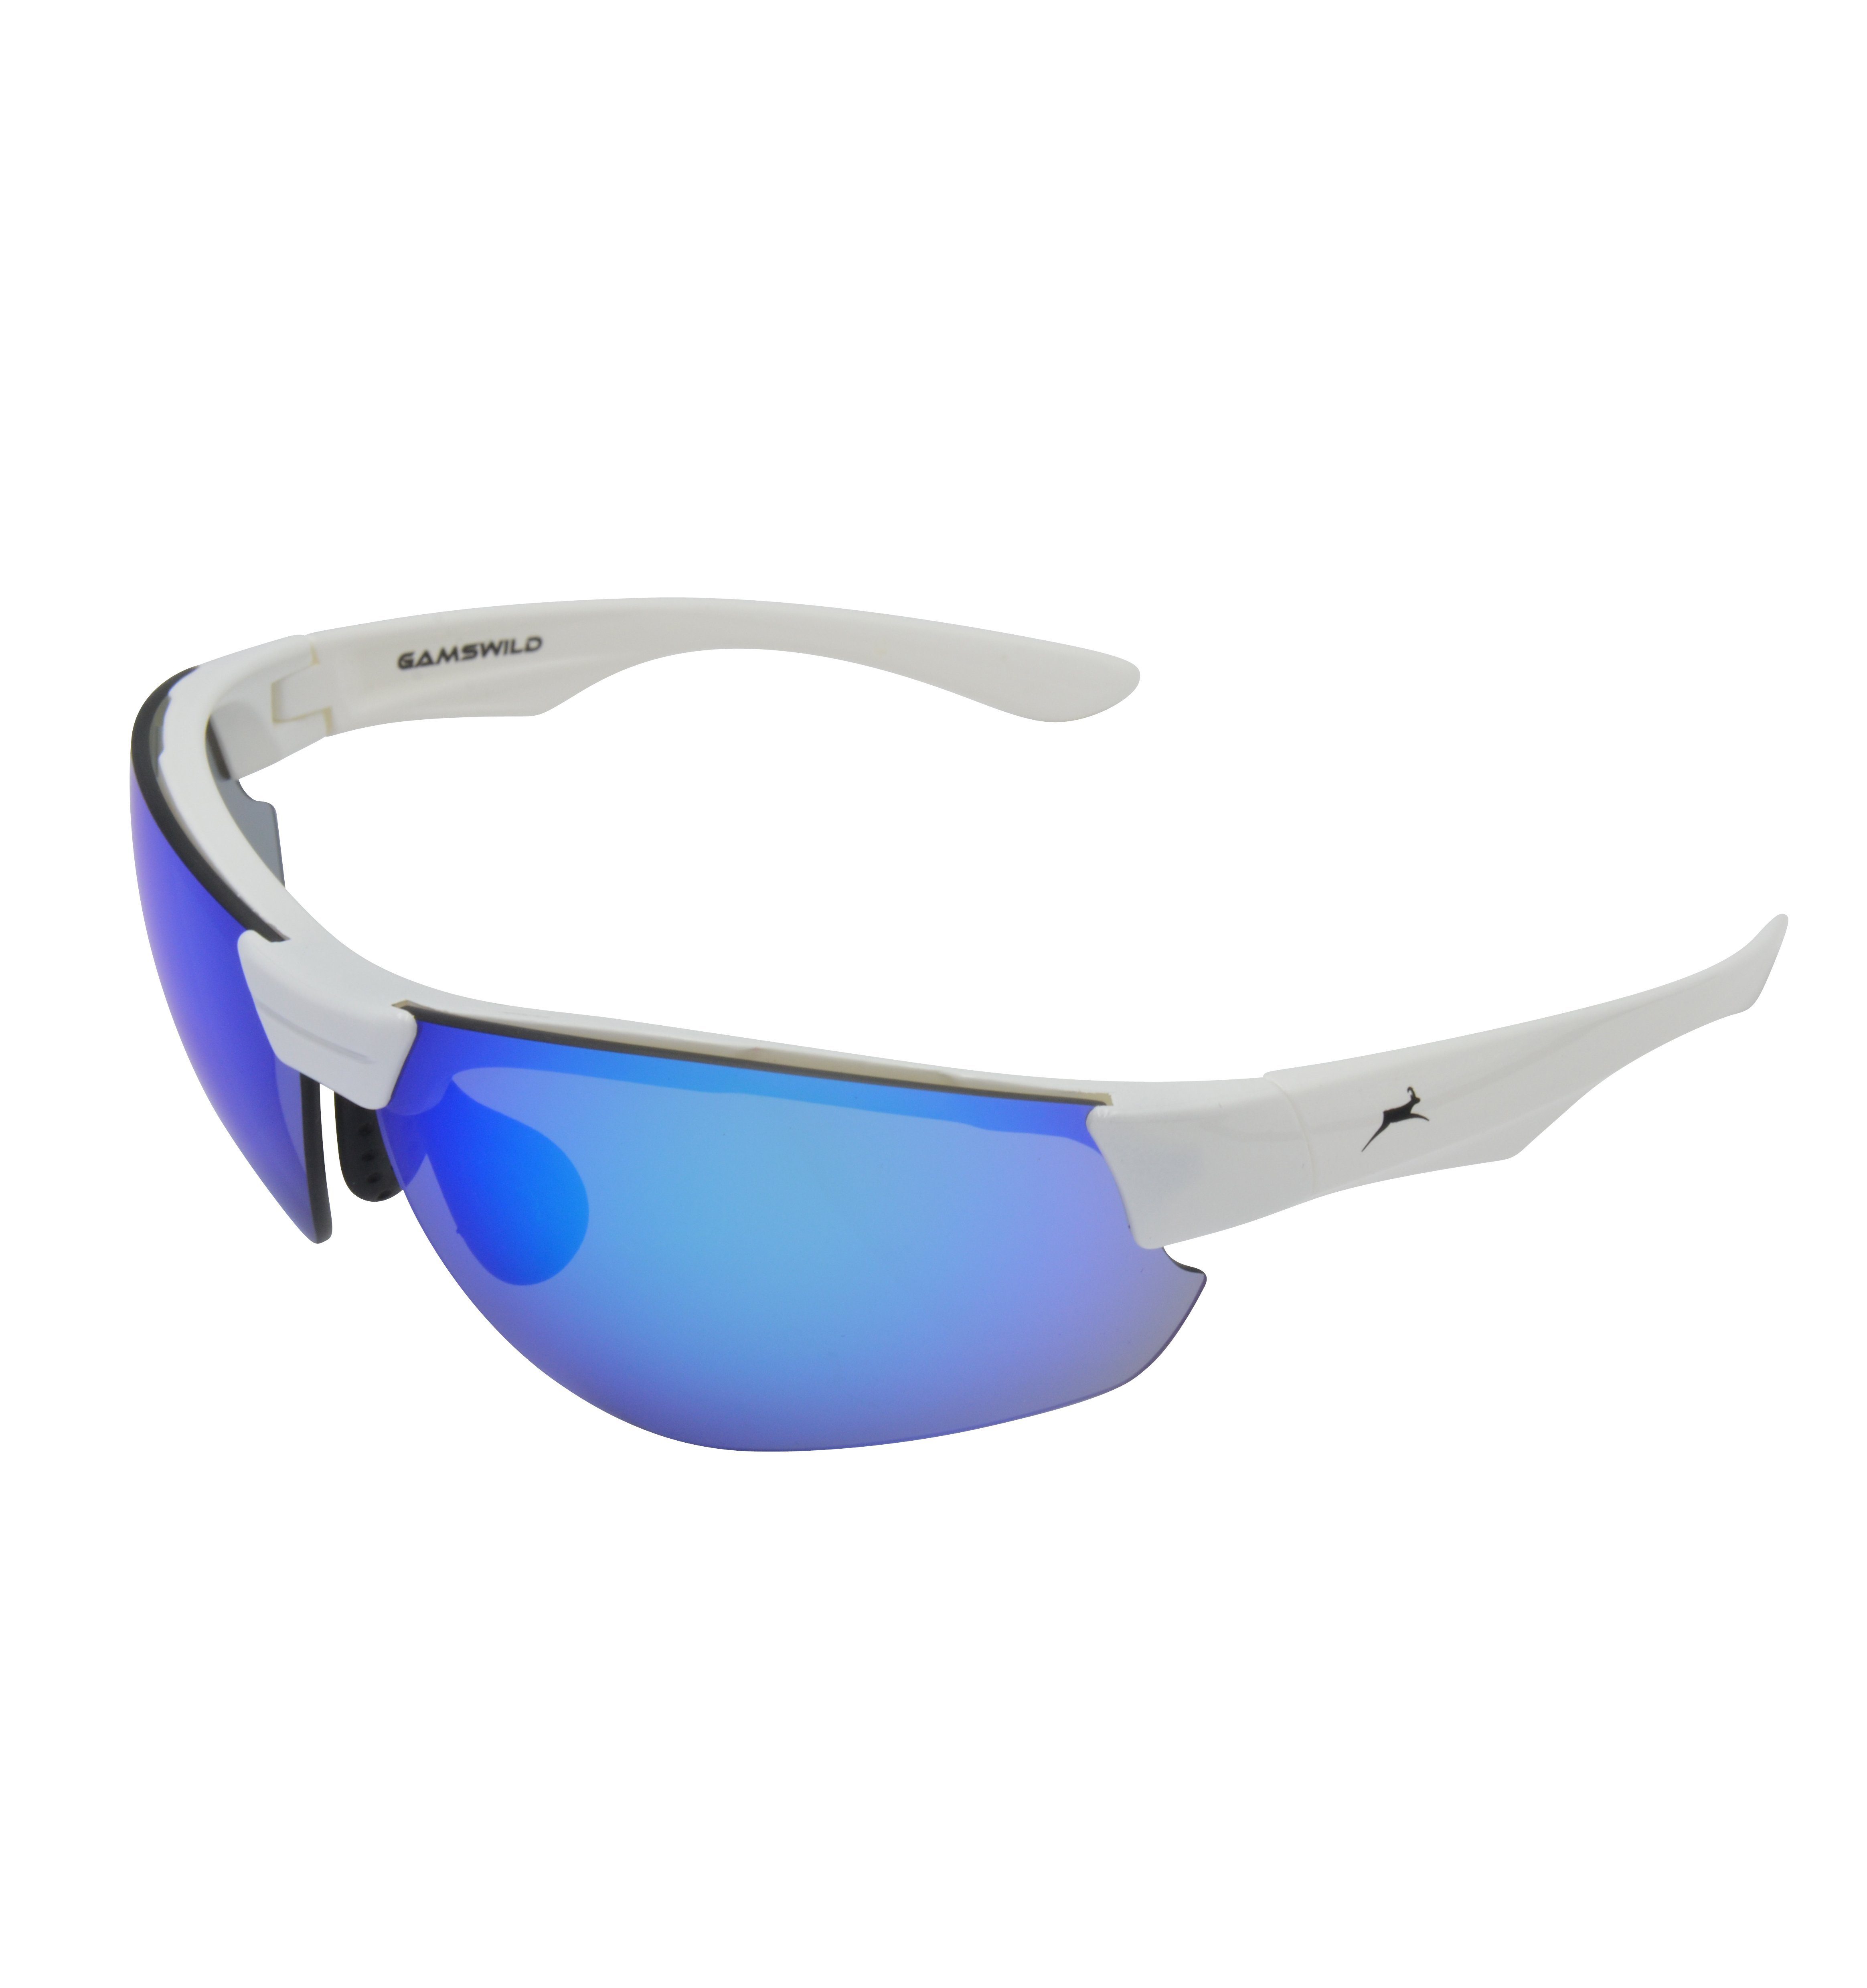 Gamswild Sportbrille WS3032 Sonnenbrille Damen Herren Fahrradbrille  Skibrille Unisex, blau, grün, weiß, Halbrahmenbrille